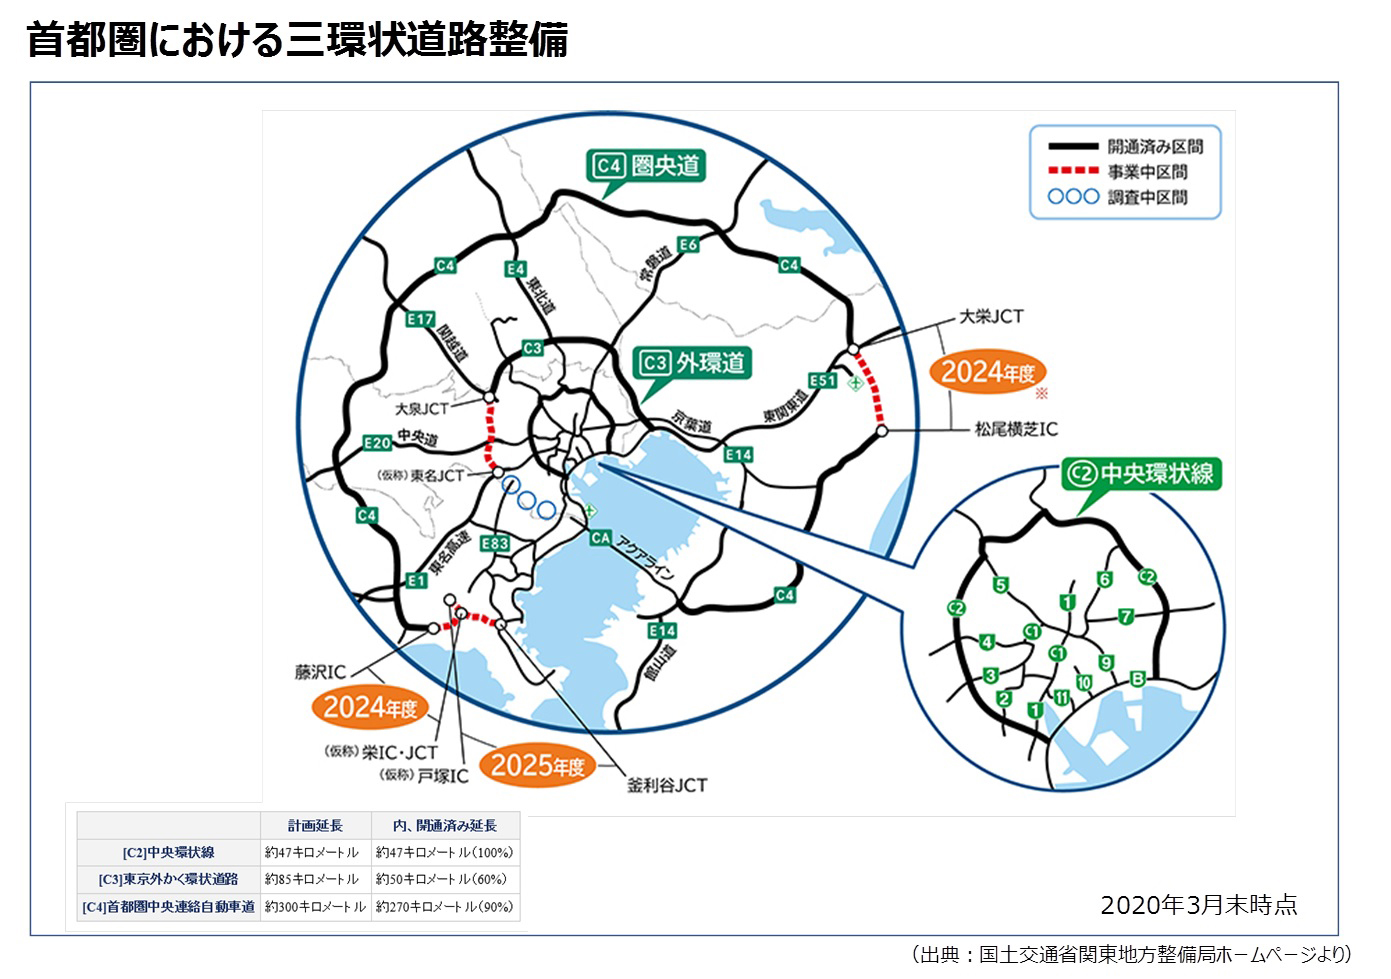 【再掲】2050年代を見据えた福岡のグランドデザイン構想（53）～環状道路とネットワーク整備構想（後）